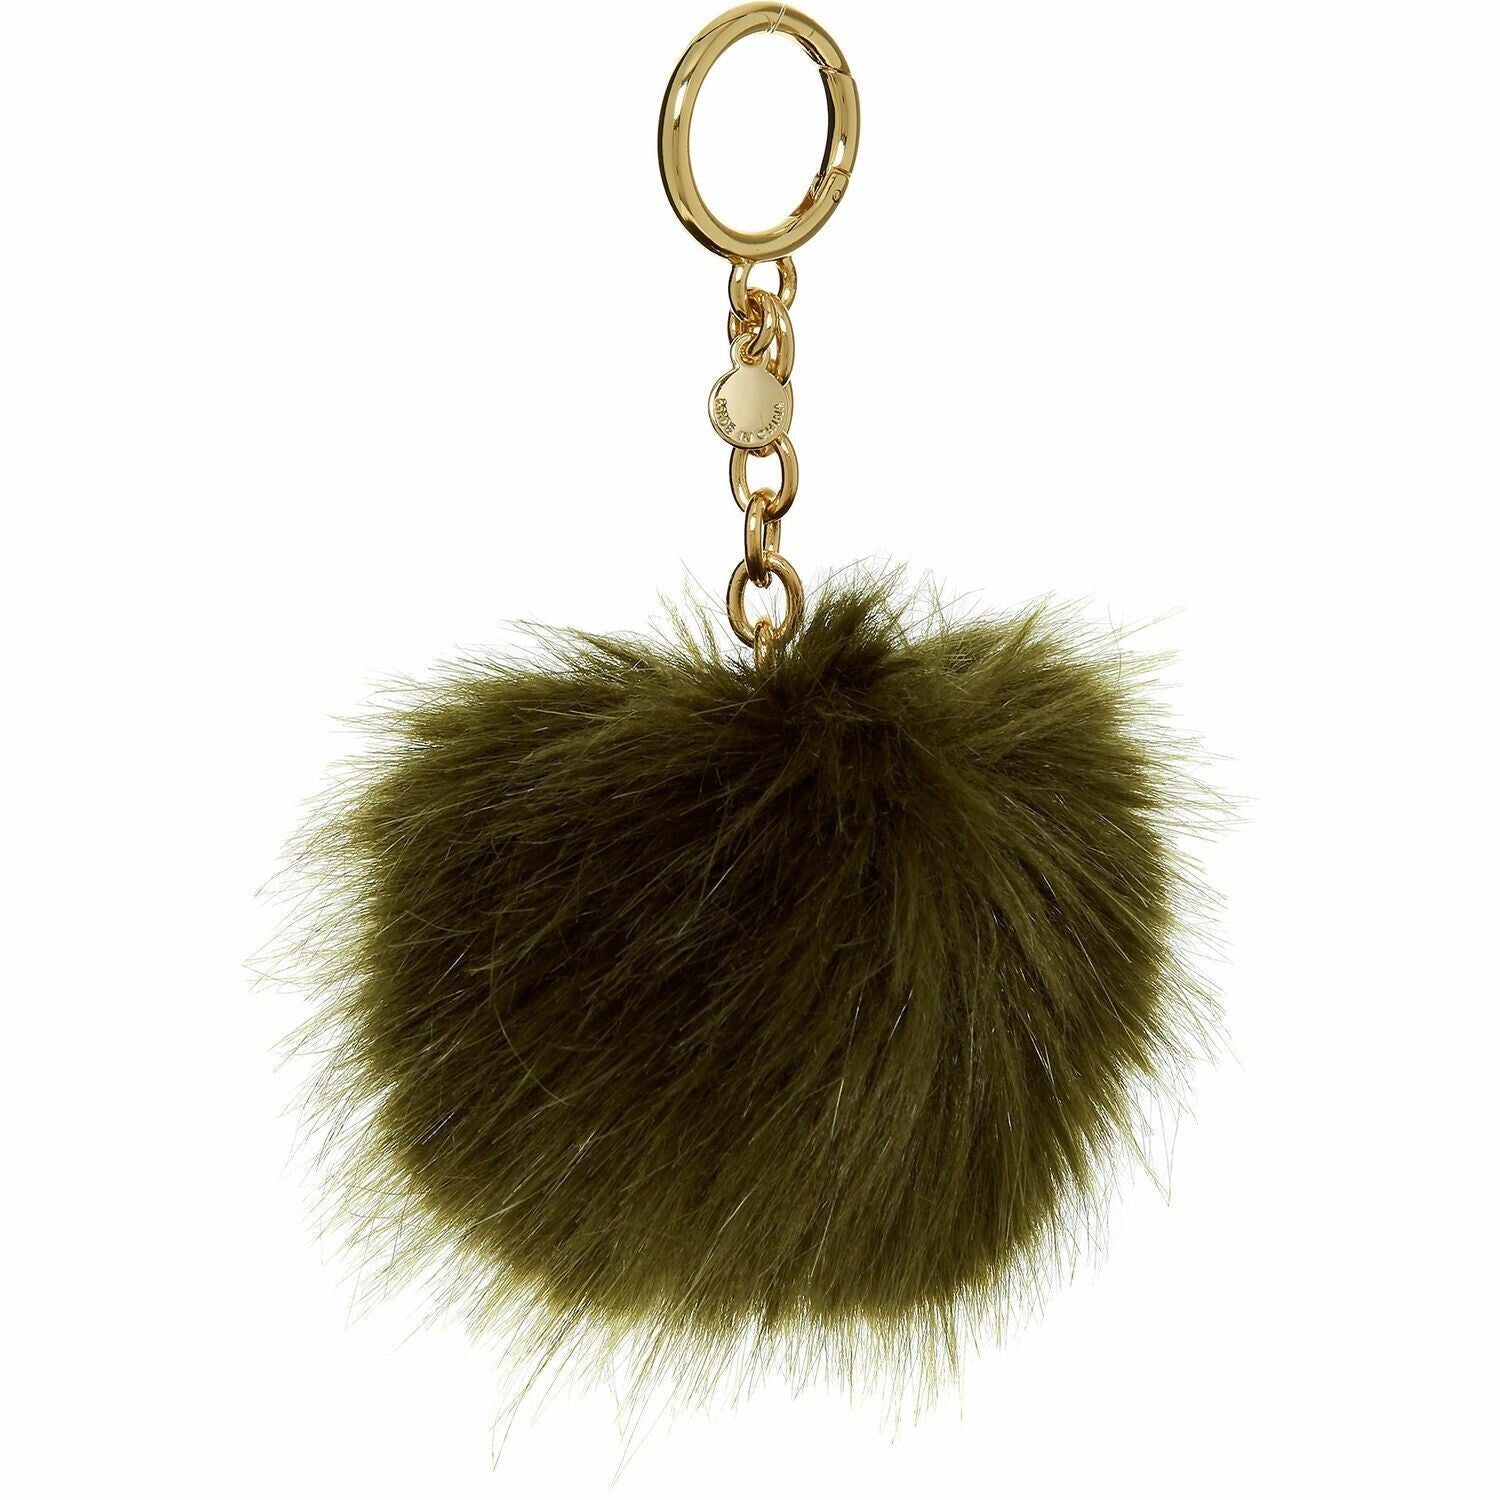 MICHAEL KORS Fluffy Faux Fur Pom Pom Keyring / Key Fob - Gift Boxed